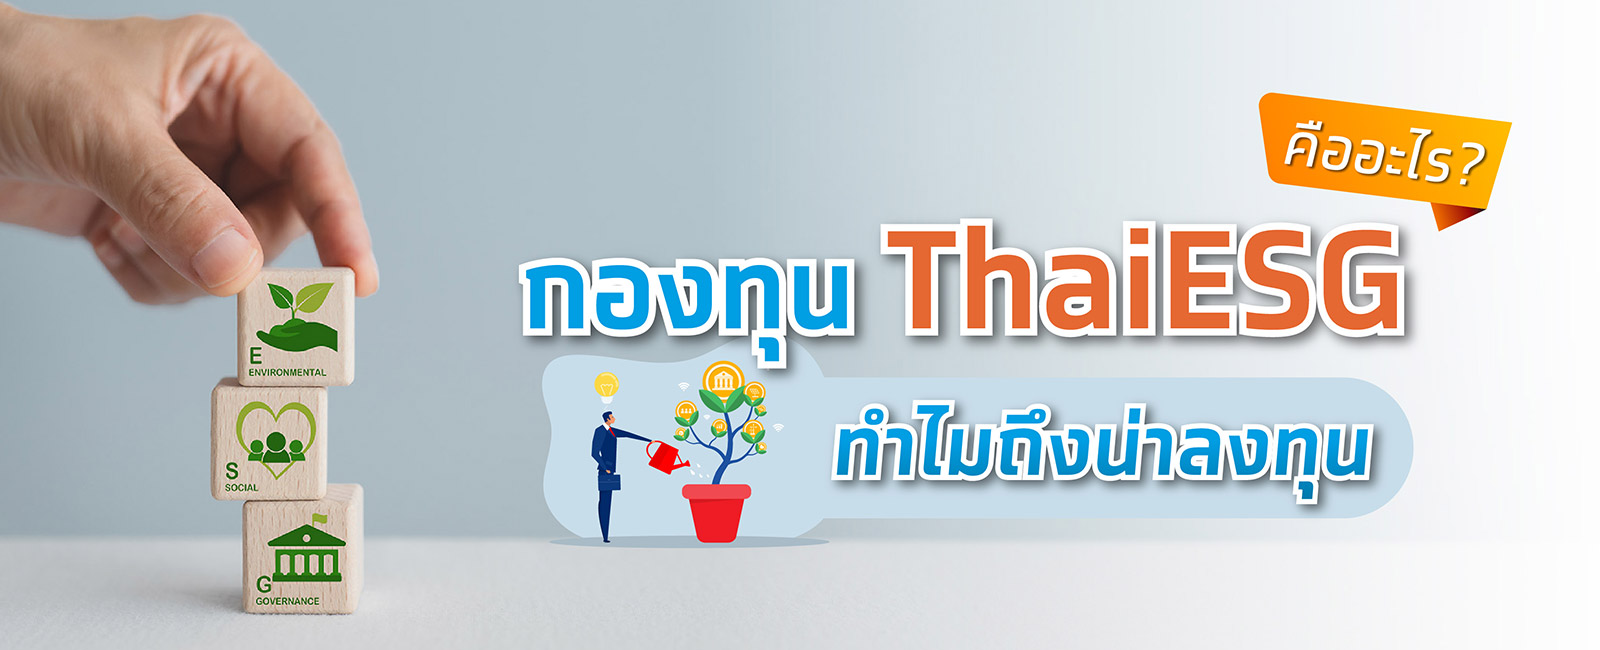 กองทุน Thai ESG คืออะไร ทำไมกองทุน Thai ESG น่าลงทุนเพื่อลดหย่อนภาษี